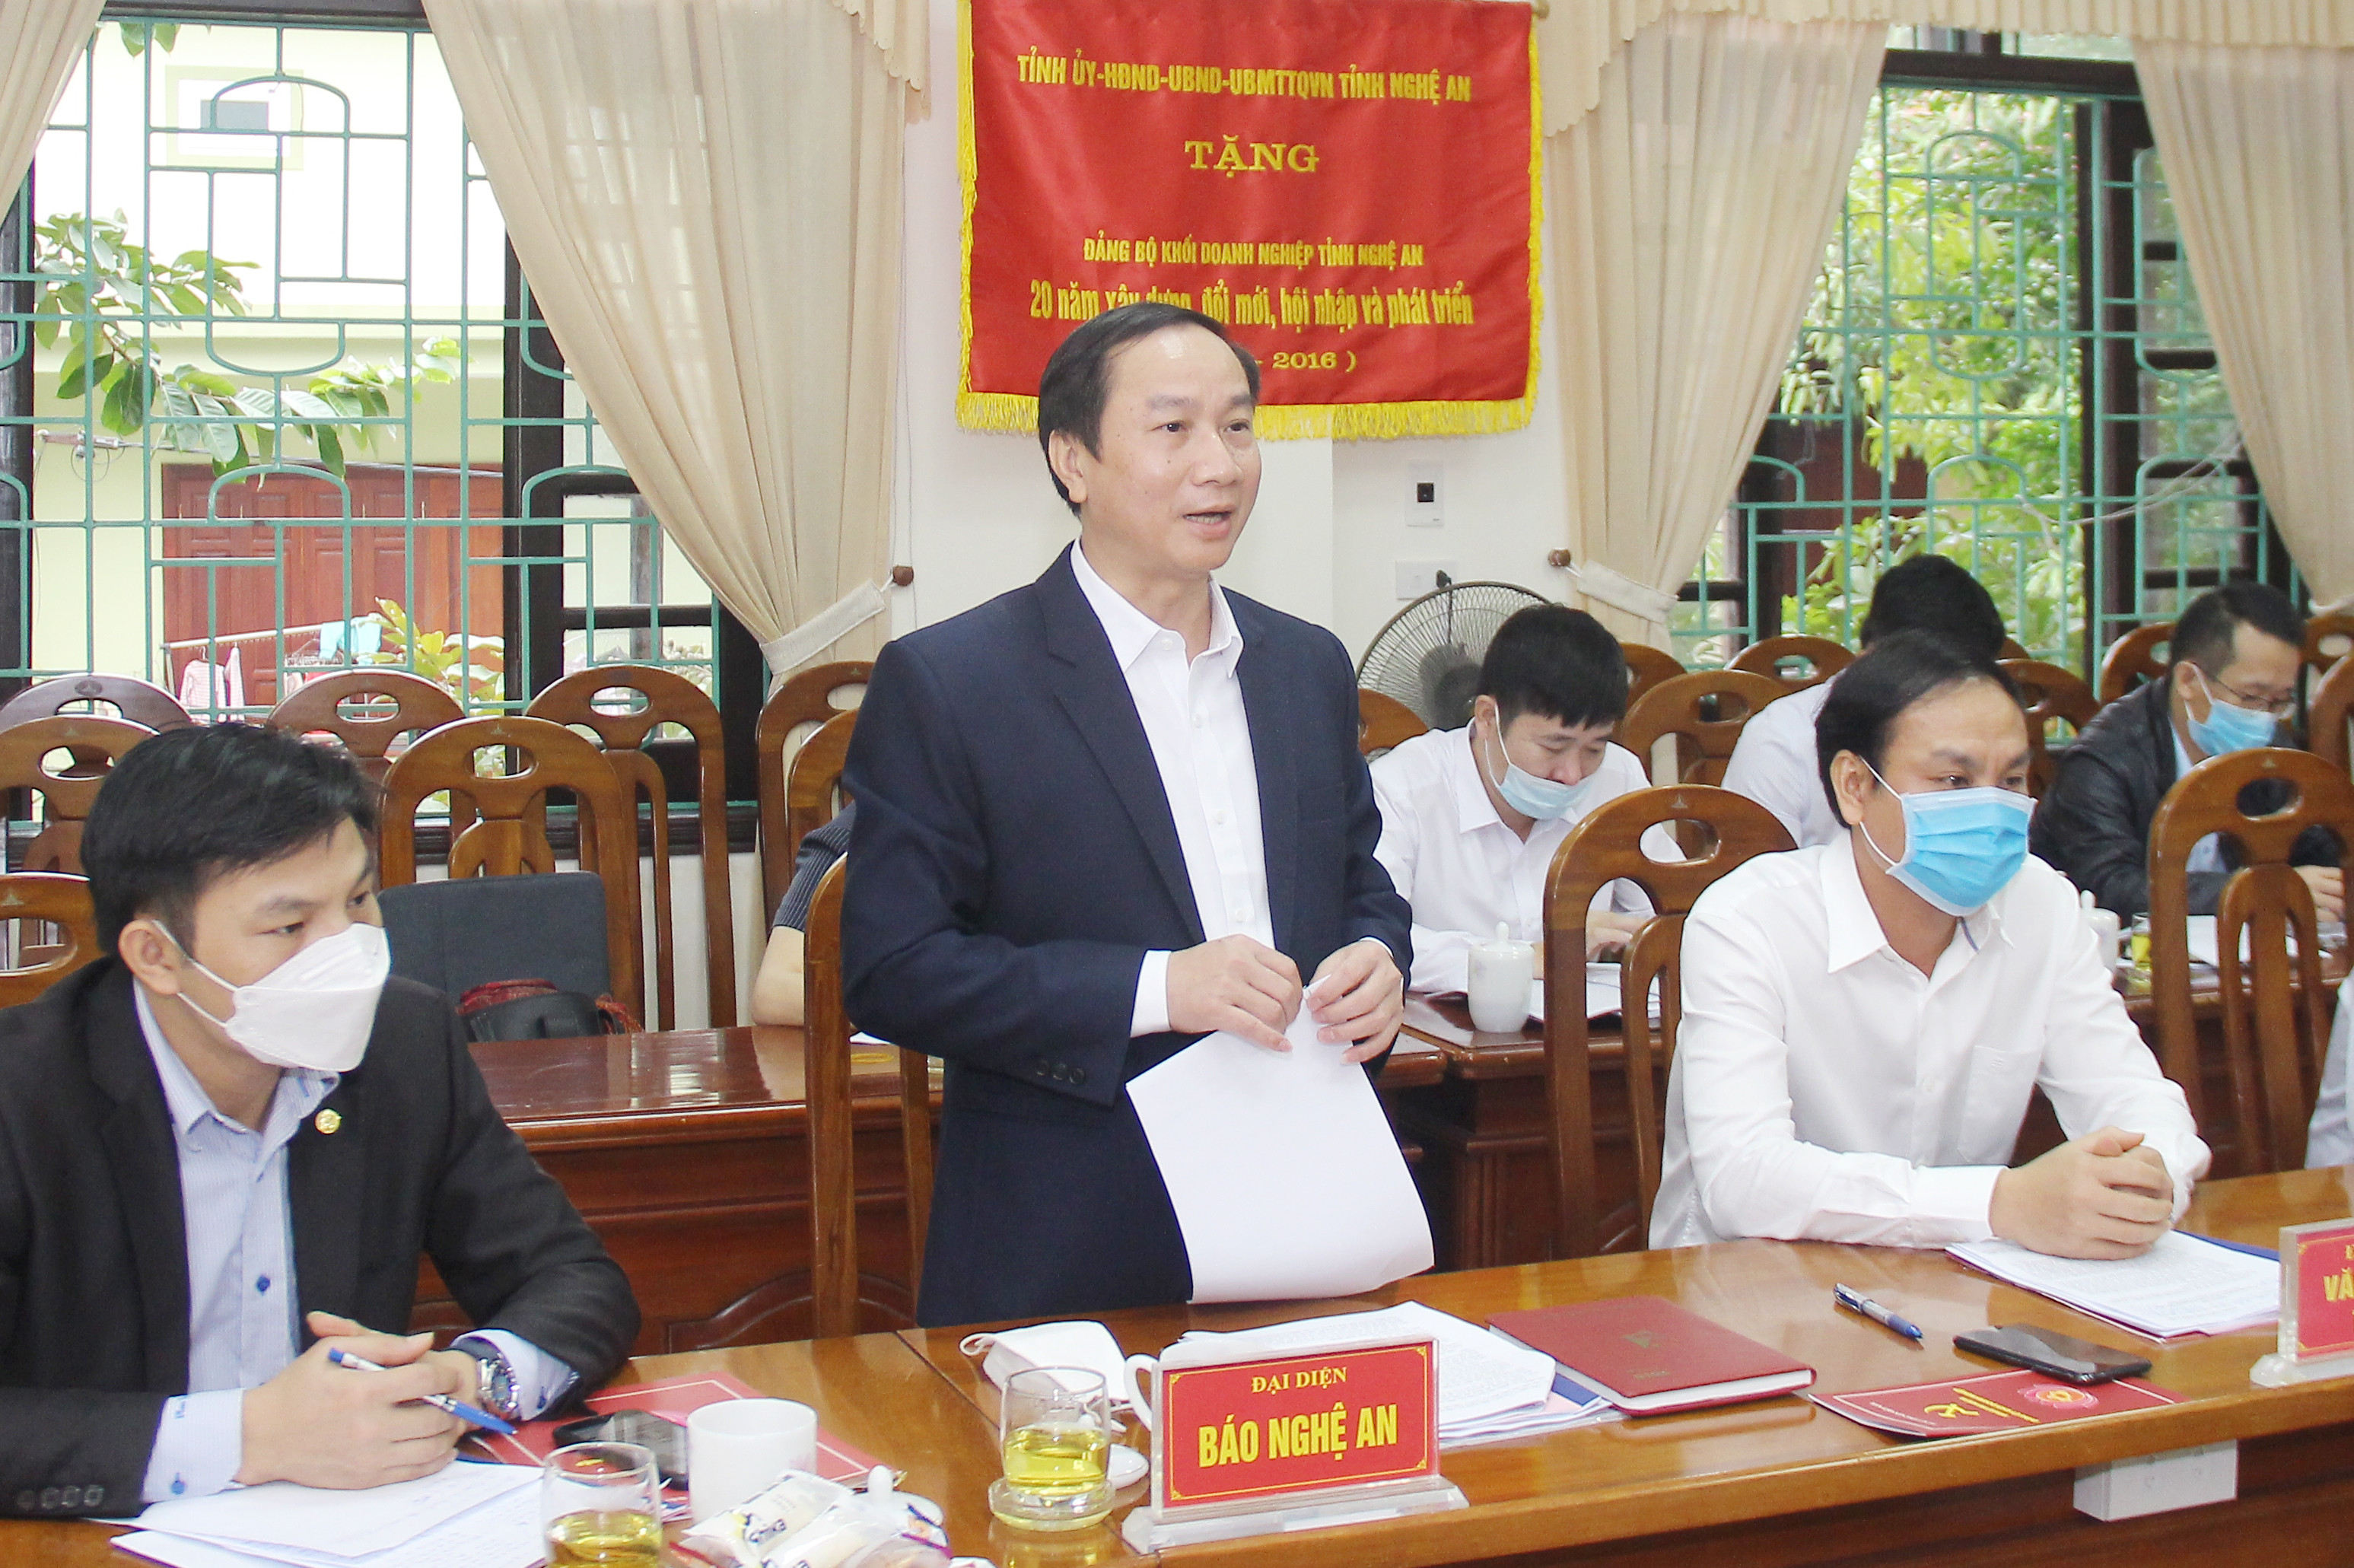 Đồng chí Trần Văn Hùng - Phó Tổng Biên tập Báo Nghệ An tham gia ý kiến tại hội nghị. Ảnh: Mai Hoa